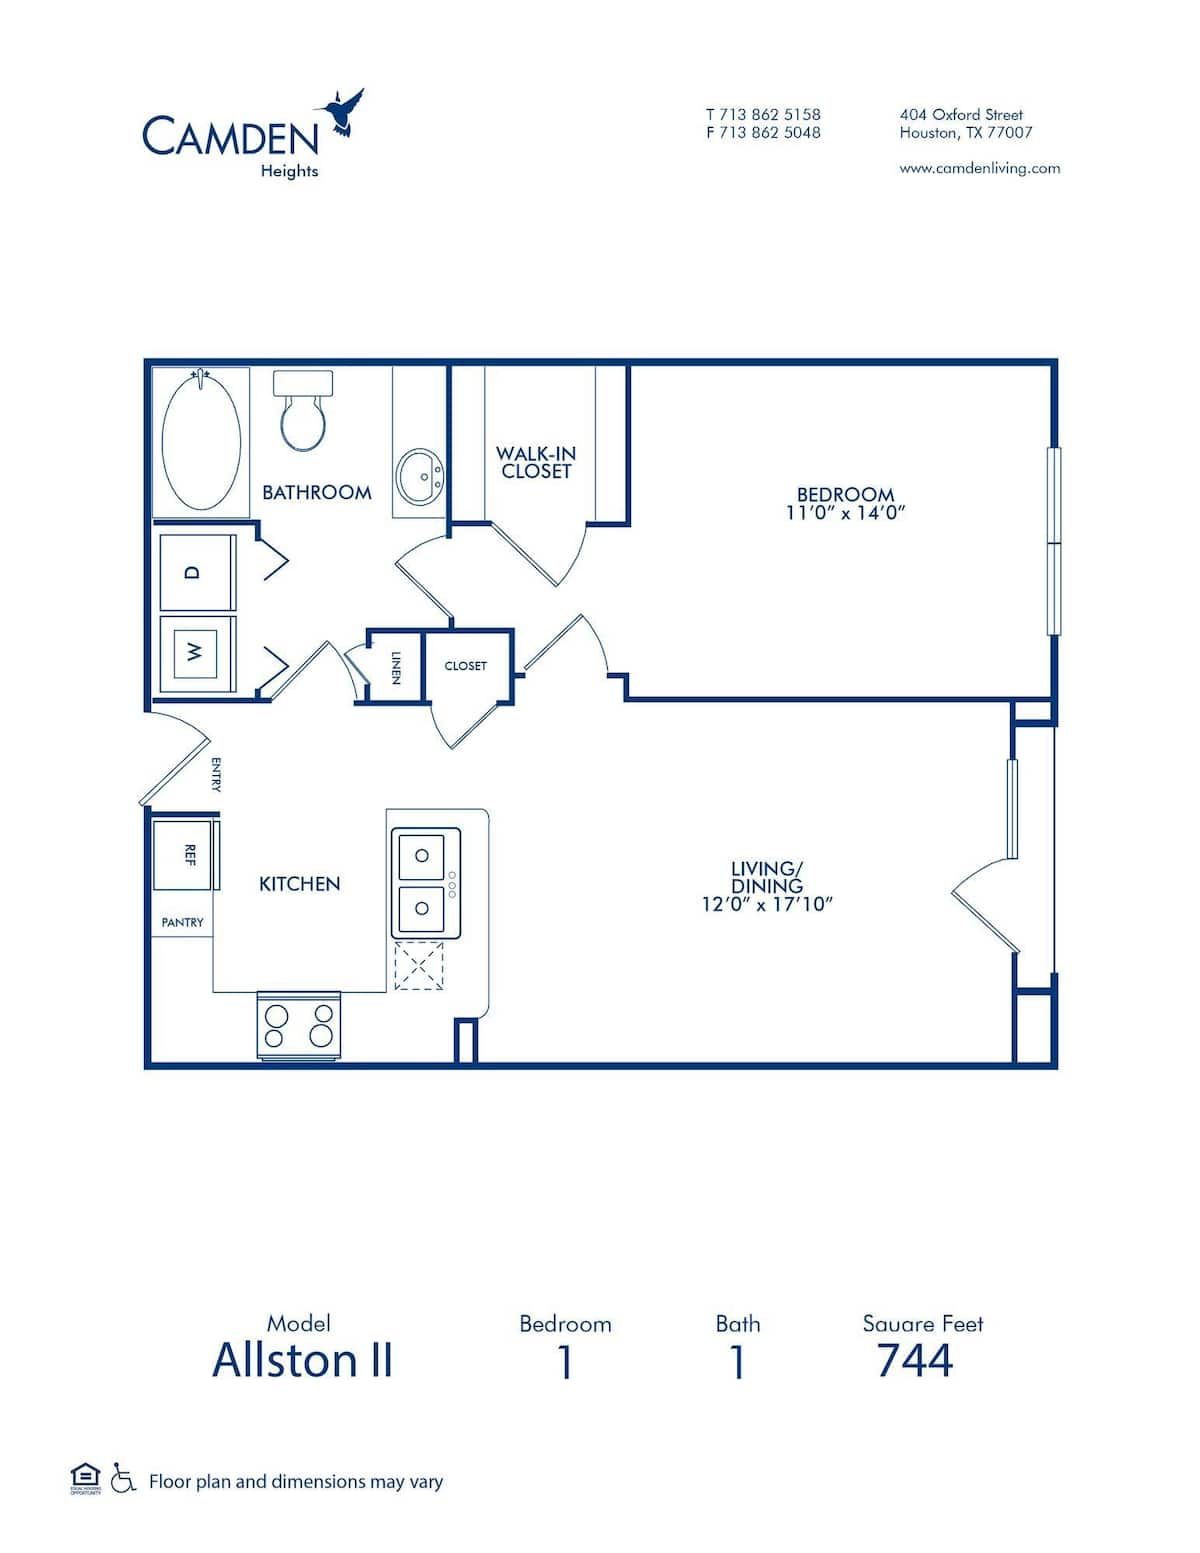 Floorplan diagram for The Allston II, showing 1 bedroom